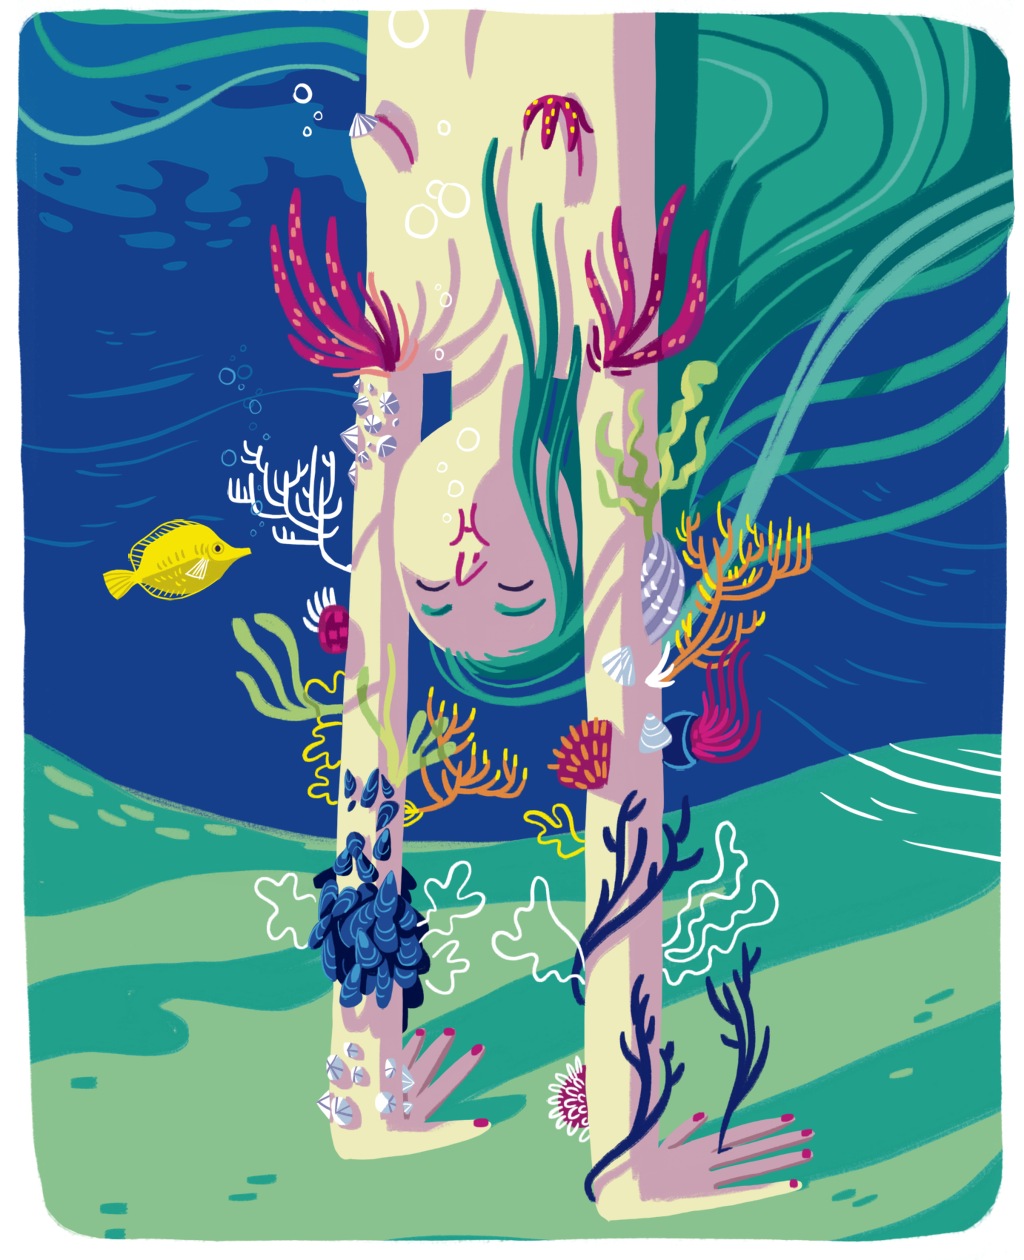 illustration numérique d'une femme qui fait le poirier sous l'eau. Ses bras servent d'ancrage à tout un écosystème marin, coraux, poissons, plantes aquatiques.